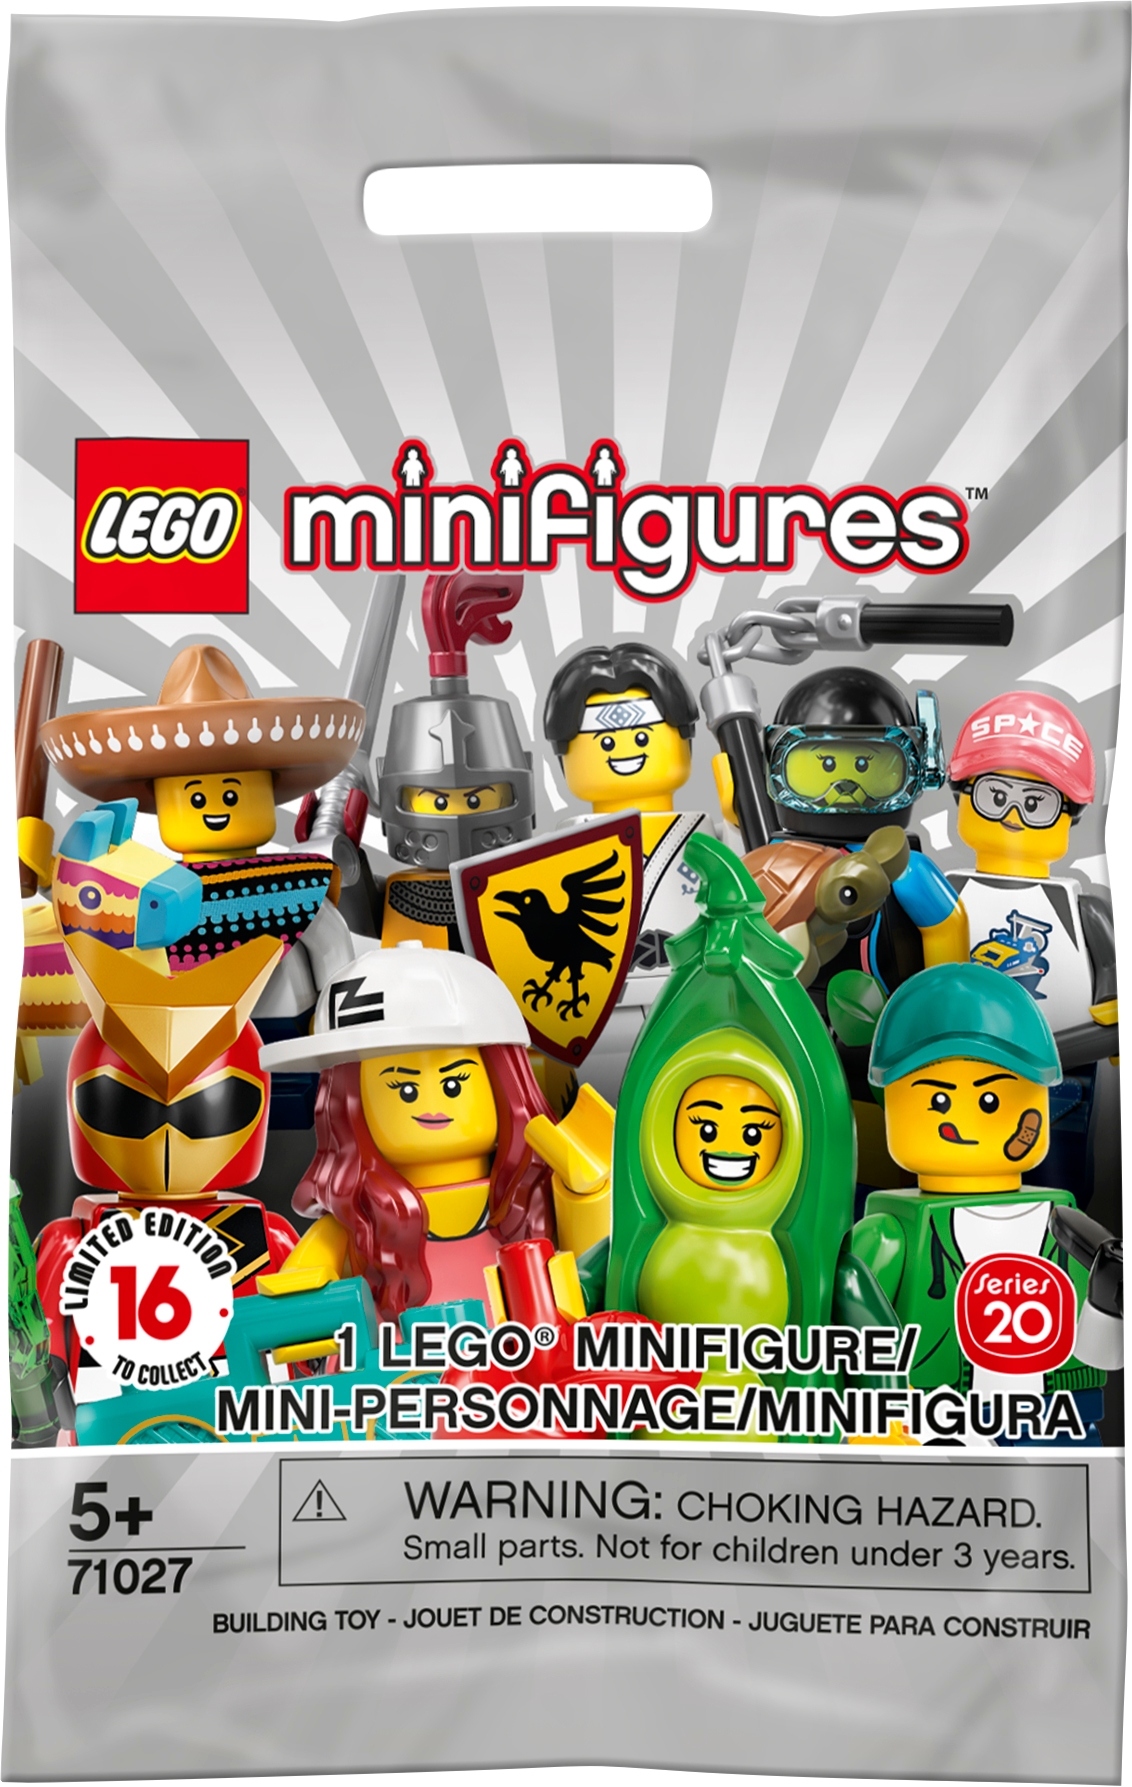 LEGO® Minifig Série 23 le costume de popcorn Minifigures 71034